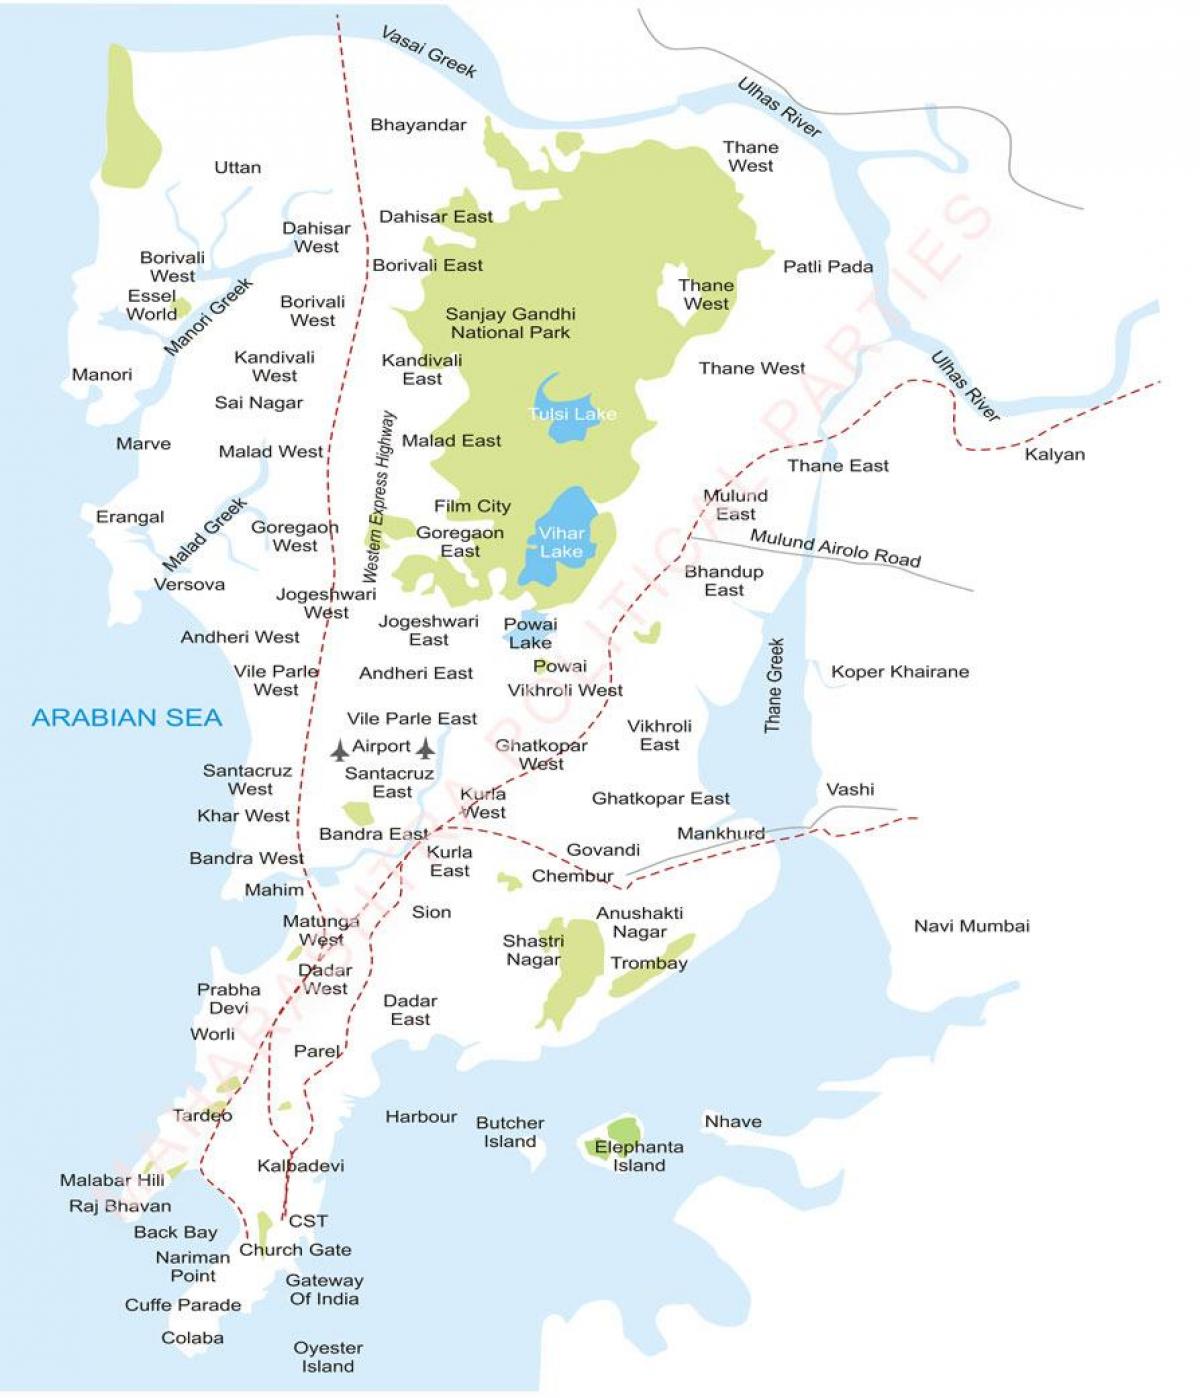 Mumbai გარეუბანში რუკა